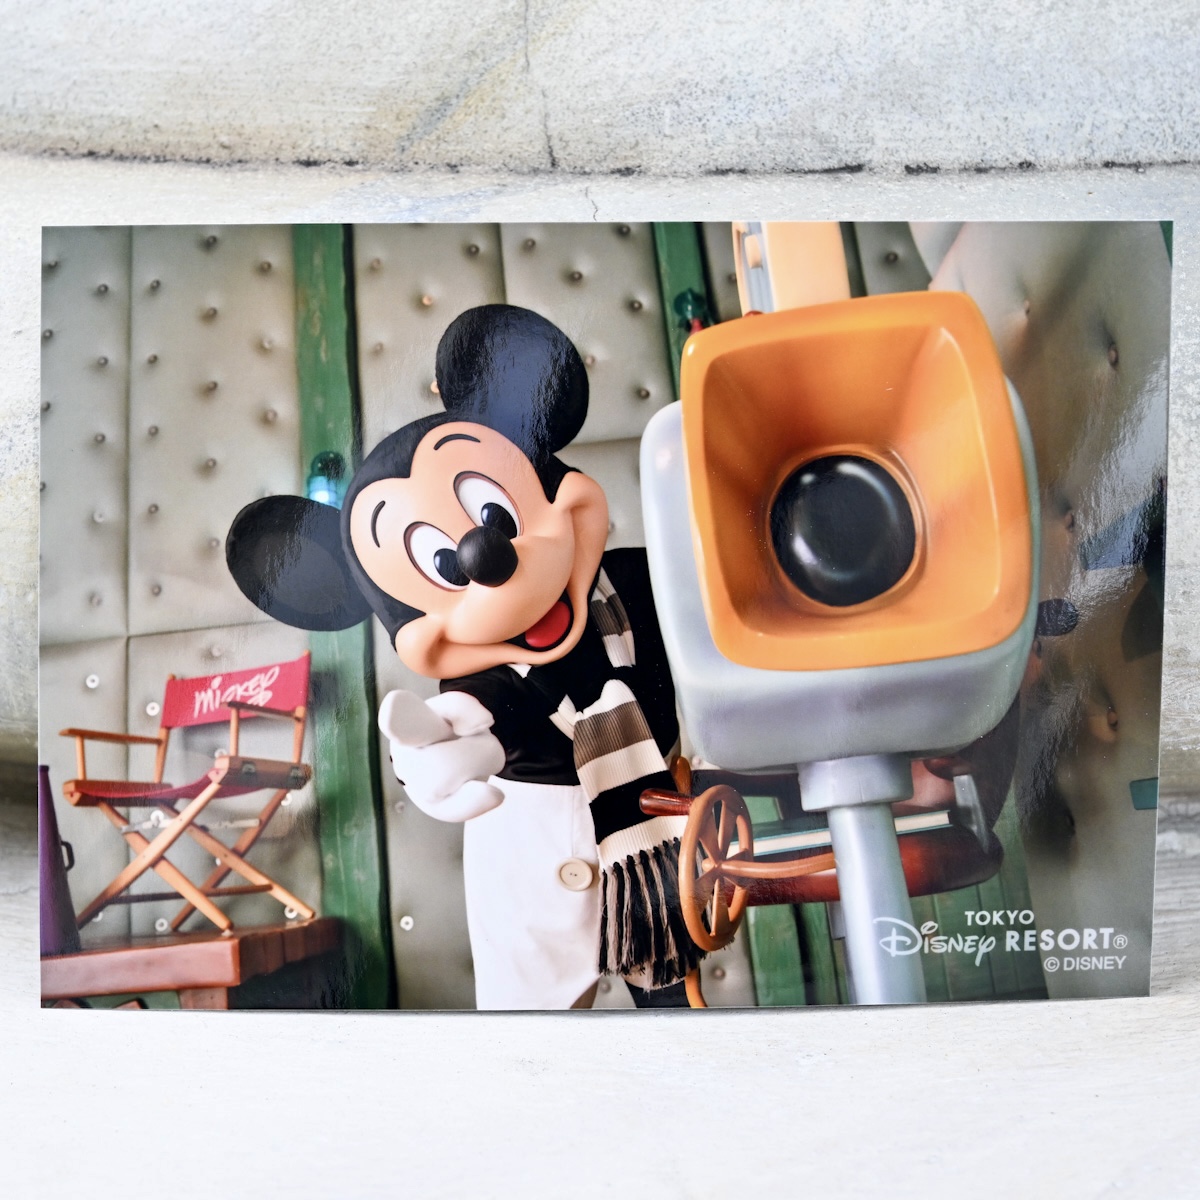 「ミッキーの家とミート・ミッキー」の『蒸気船ウィリー』ミッキーマウス